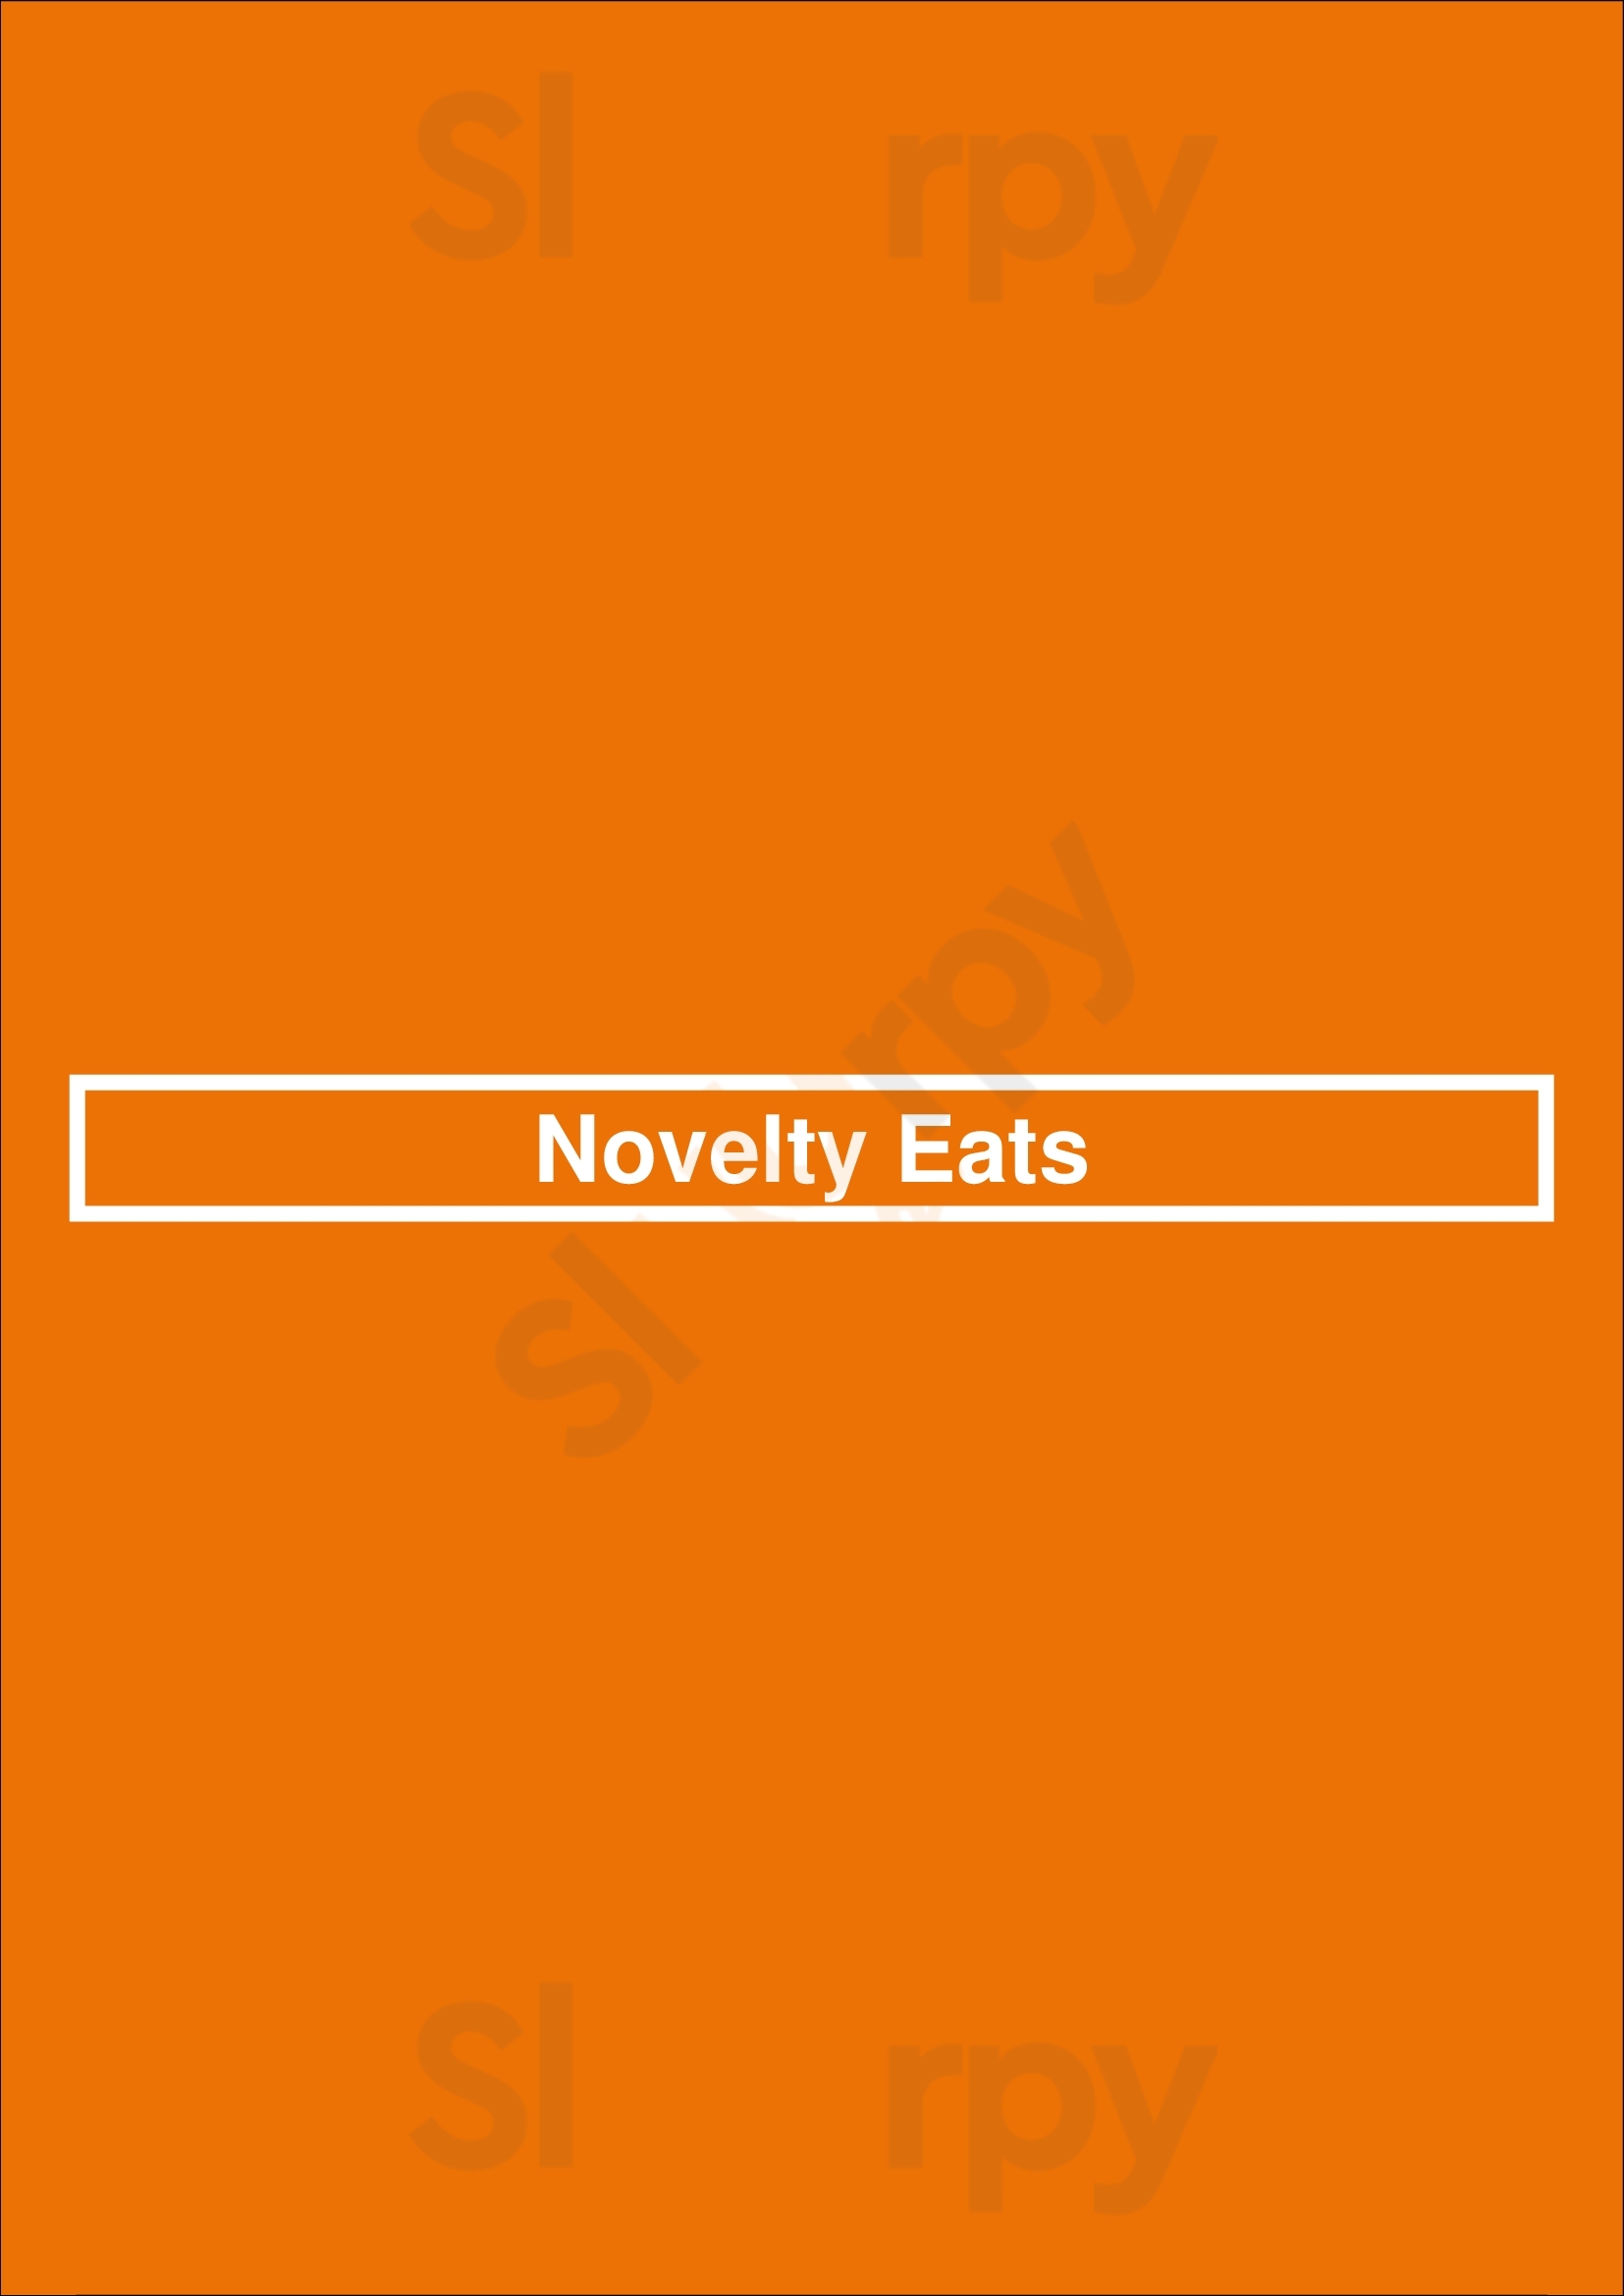 Novelty Eats Bronx Menu - 1